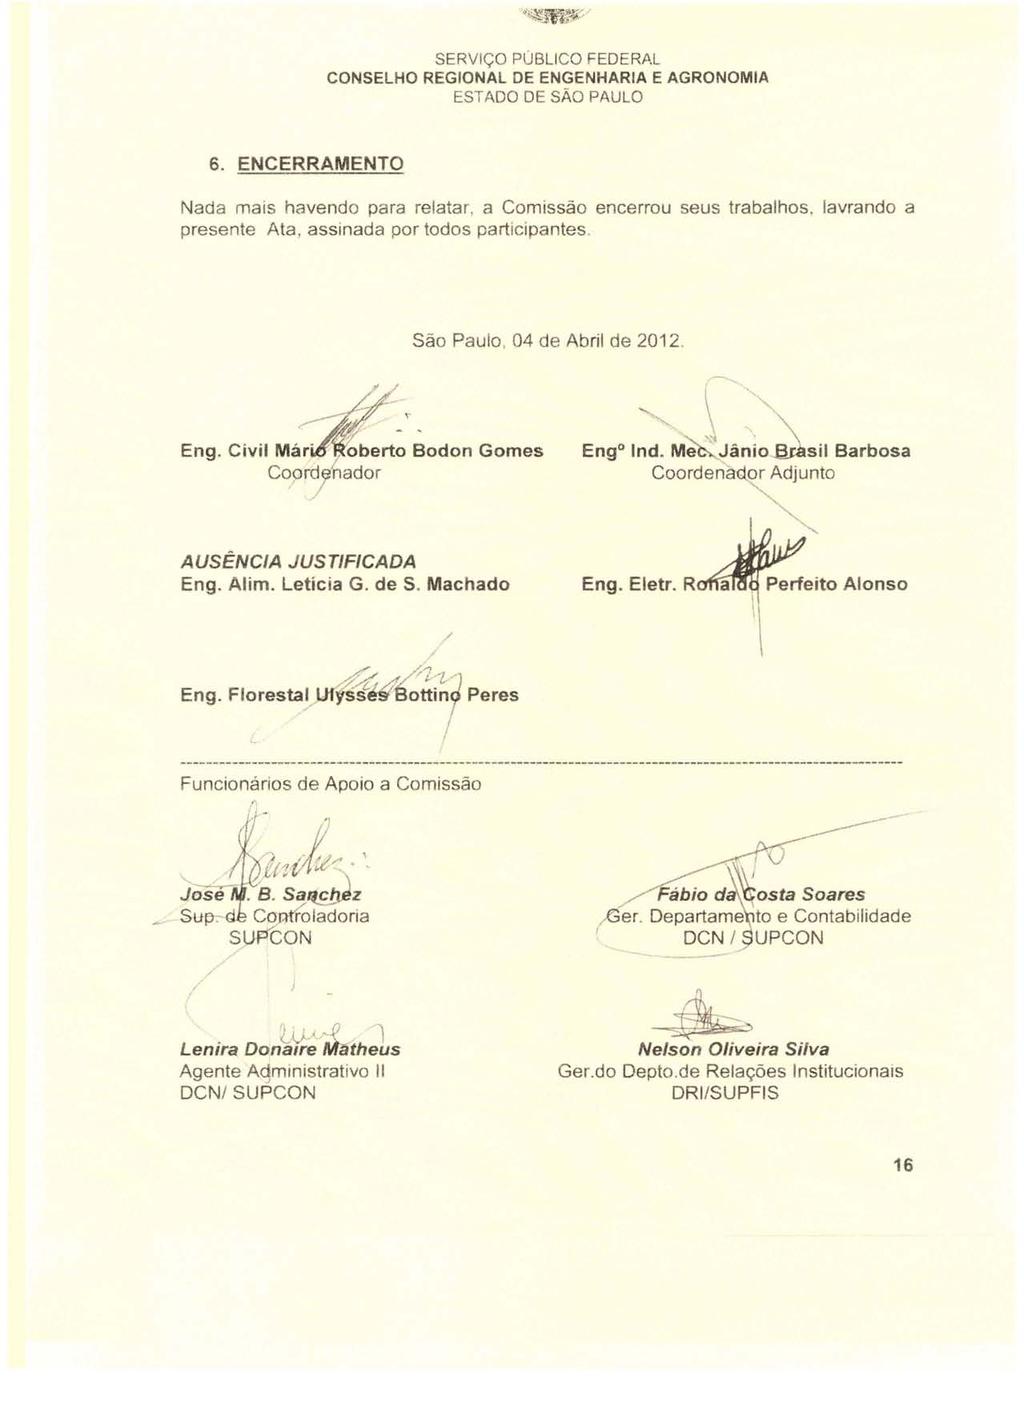 6. ENCERRAMENTO Nada mais havendo para relatar, a Comissão encerrou seus trabalhos. presente Ata, assinada por todos participantes. lavrando a São Paulo, 04 de Abril de 2012. /' / Eng.